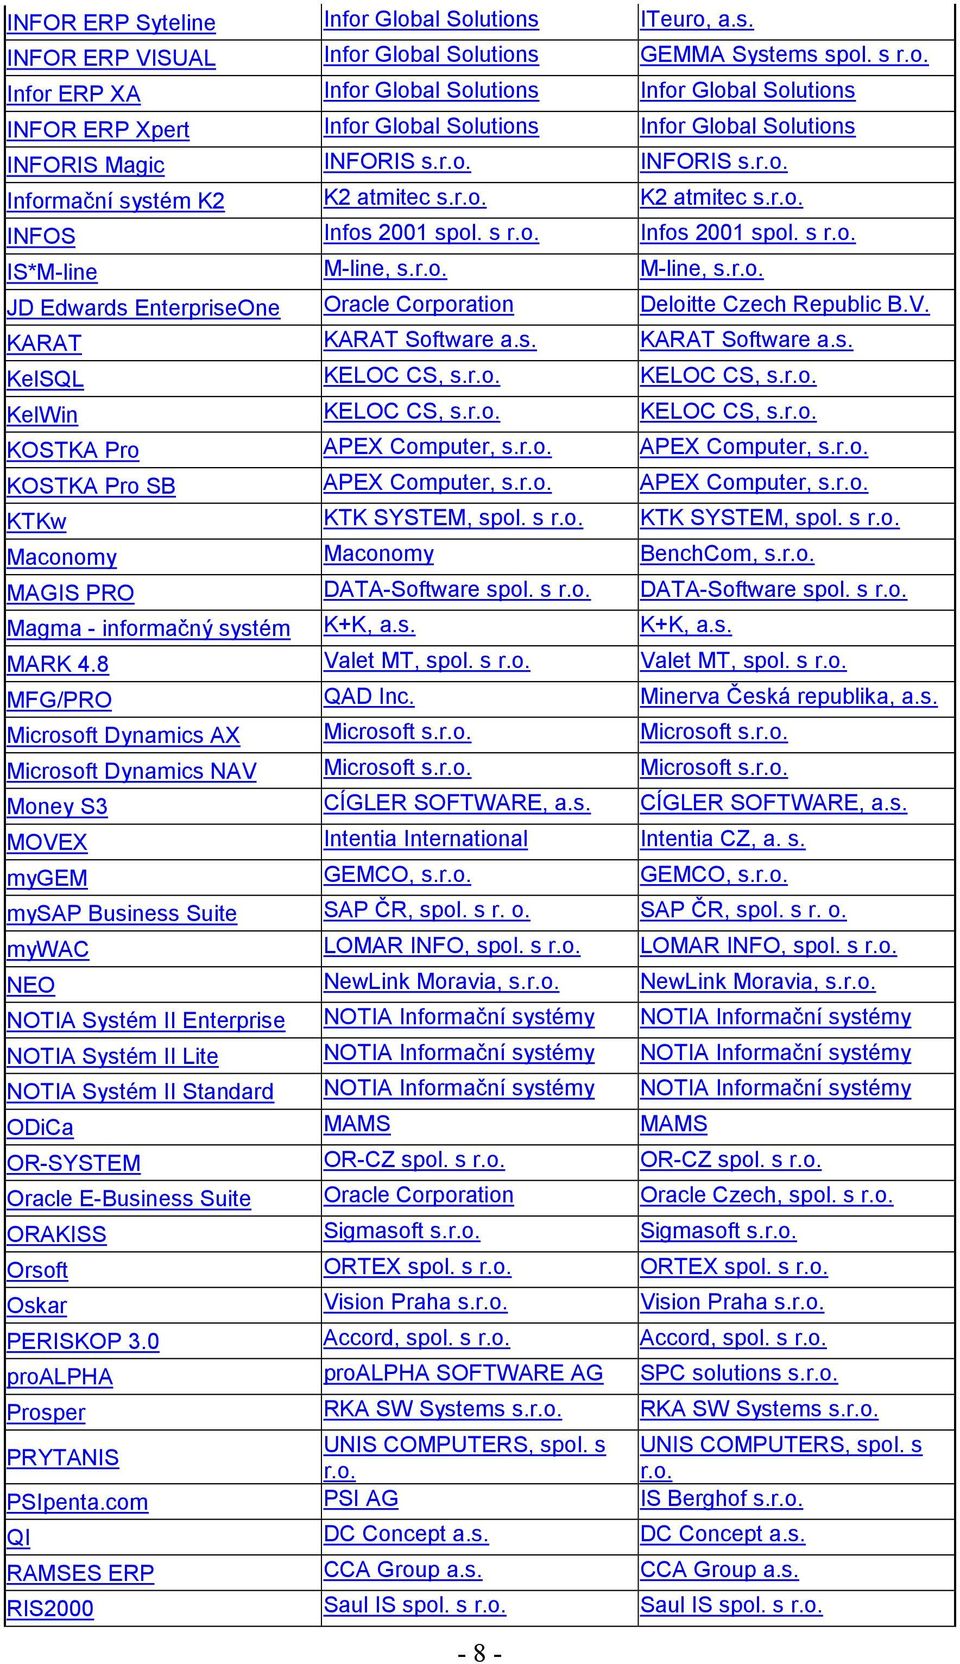 V. KARAT KARAT Software a.s. KARAT Software a.s. KelSQL KELOC CS, s.r.o. KELOC CS, s.r.o. KelWin KELOC CS, s.r.o. KELOC CS, s.r.o. KOSTKA Pro APEX Computer, s.r.o. APEX Computer, s.r.o. KOSTKA Pro SB APEX Computer, s.